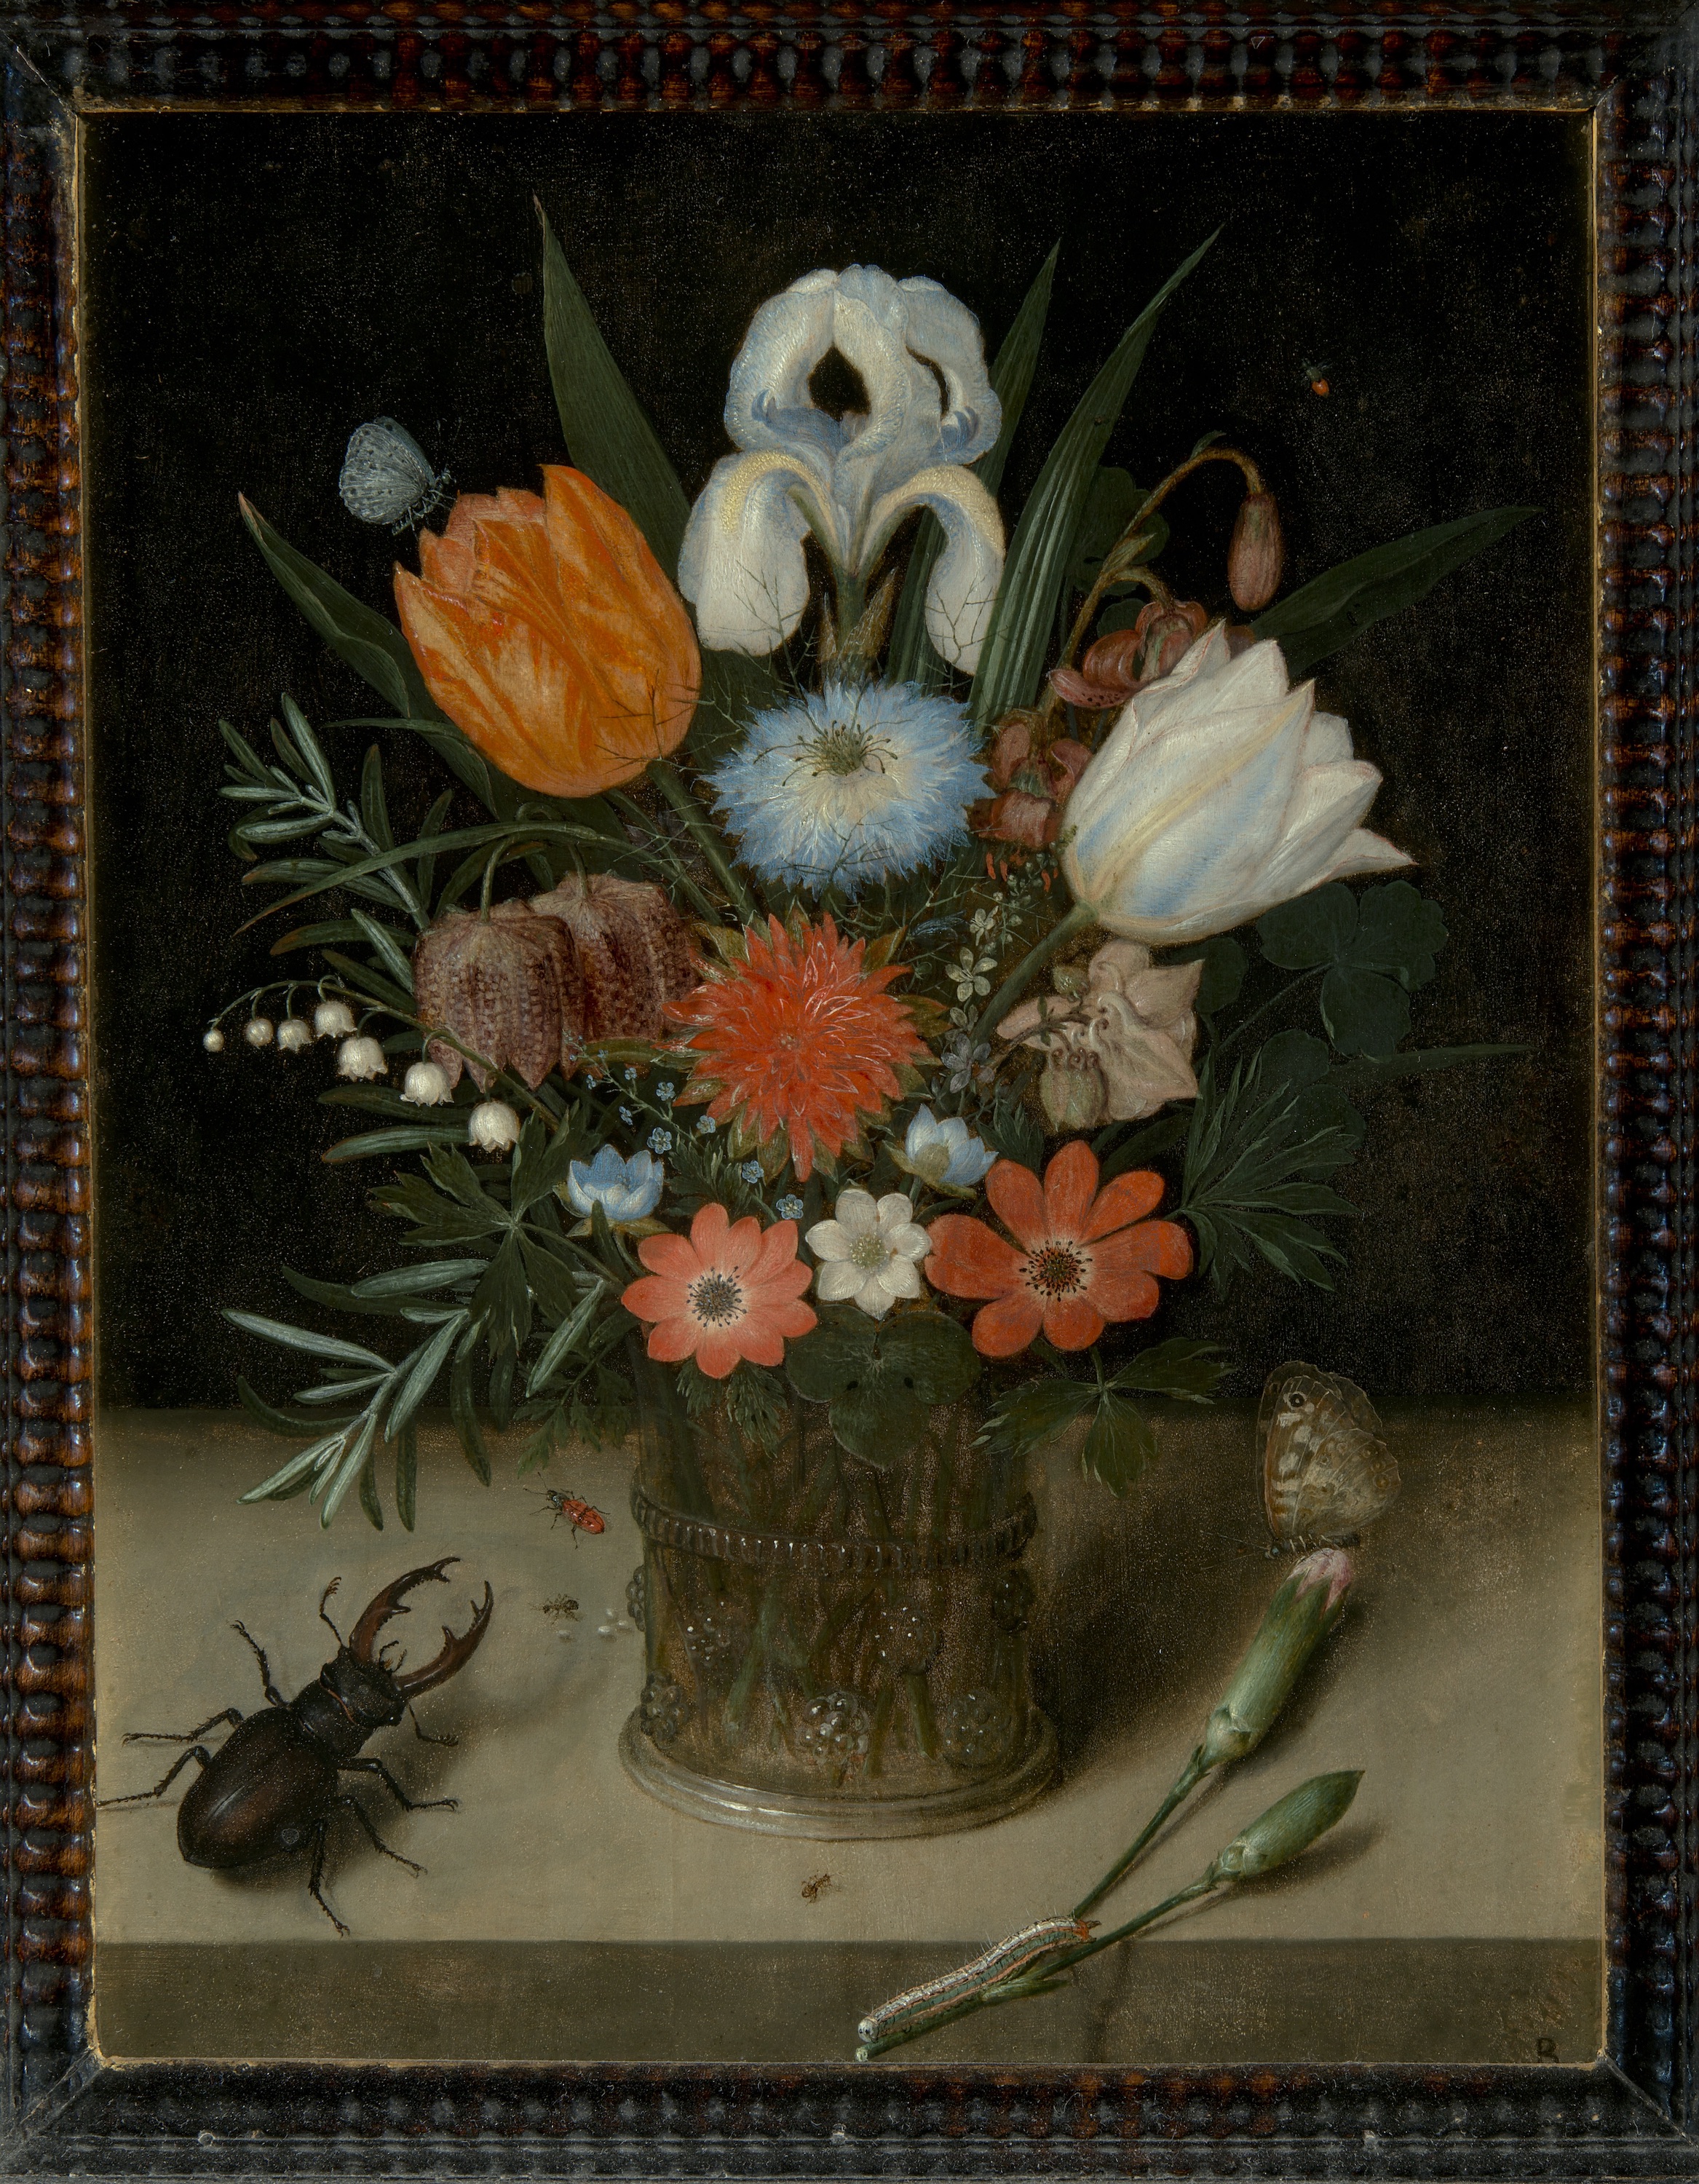 Virágváza by Peter Binoit - 1613 - 28.5 x 21,6 cm 